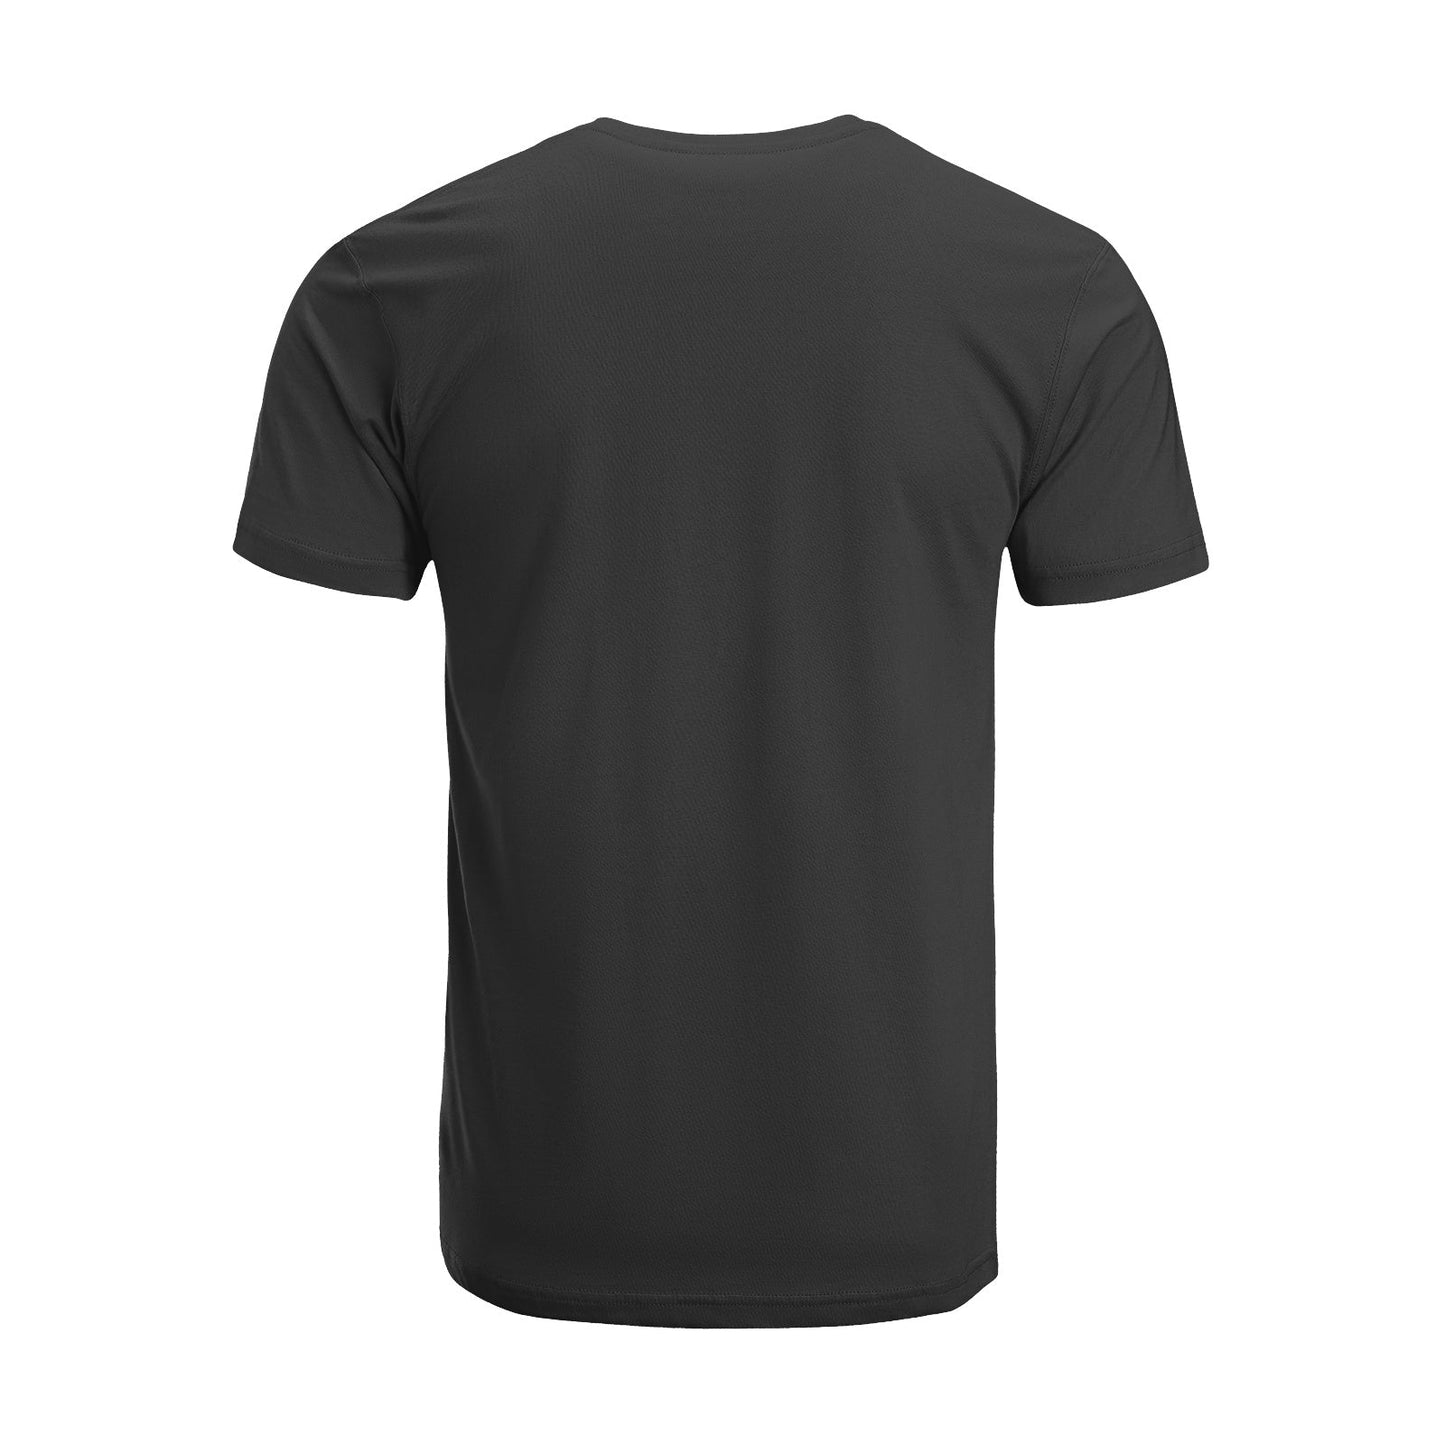 Unisex Short Sleeve Crew Neck Cotton Jersey T-Shirt TRUCK 22